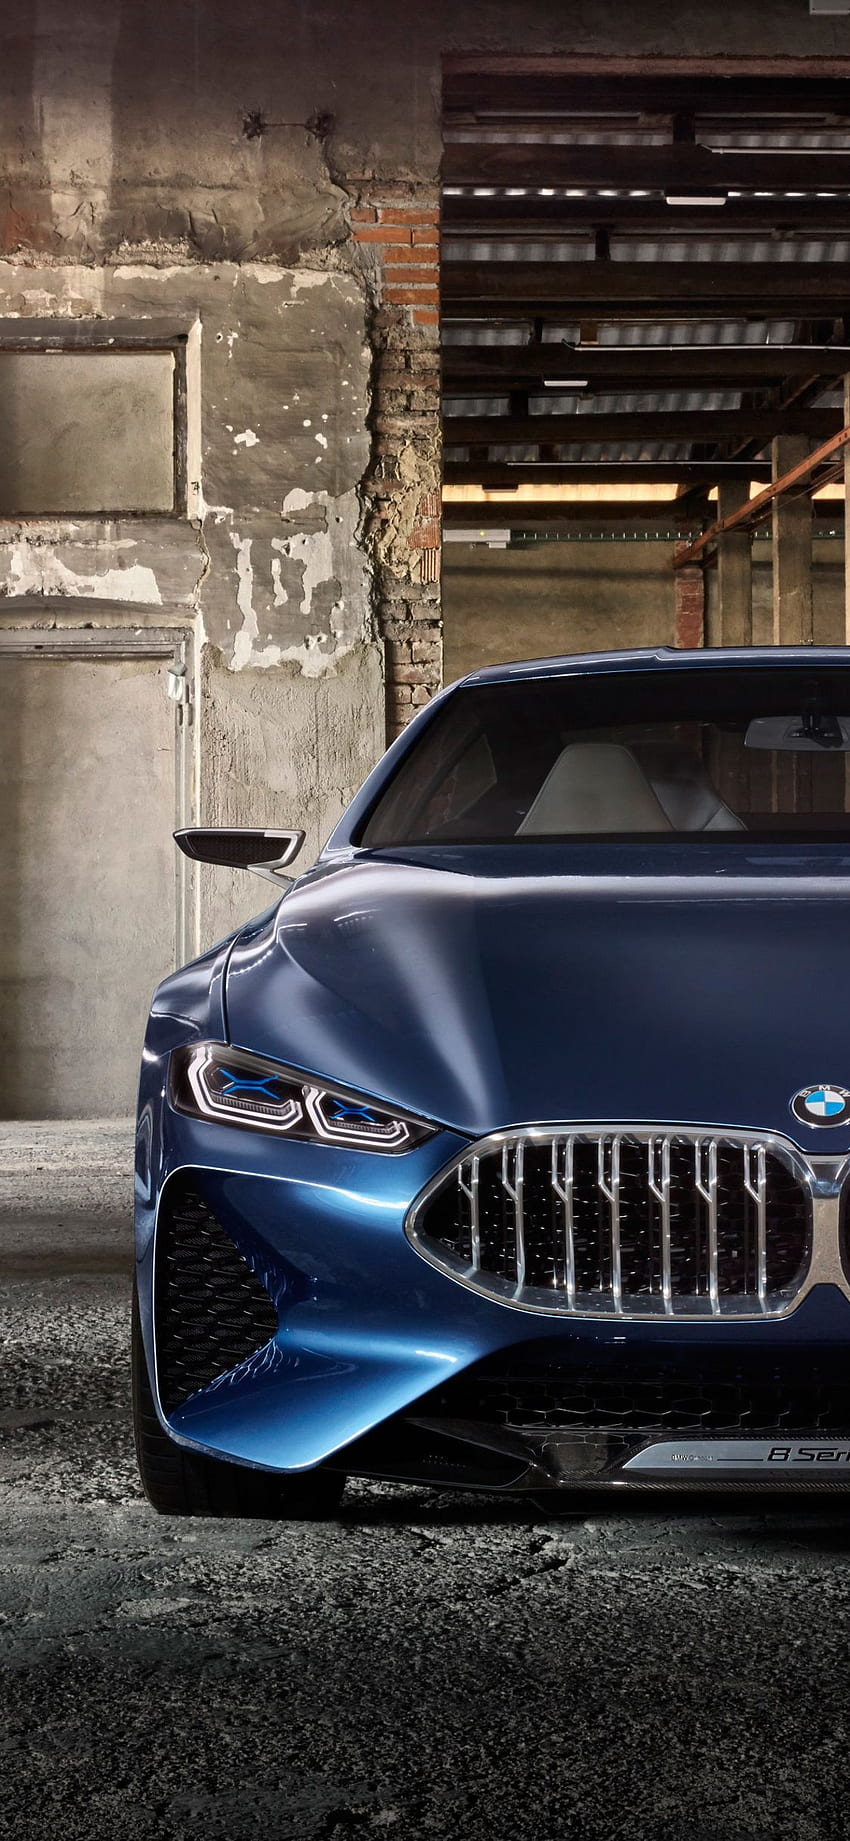 BMW - thương hiệu xe hơi đến từ Đức luôn được biết đến với sự sang trọng, đẳng cấp và chất lượng. Bức ảnh về một chiếc BMW sẽ giúp bạn khám phá một điều gì đó mới mẻ và cùng nhau đánh giá thiết kế tuyệt vời của nó.